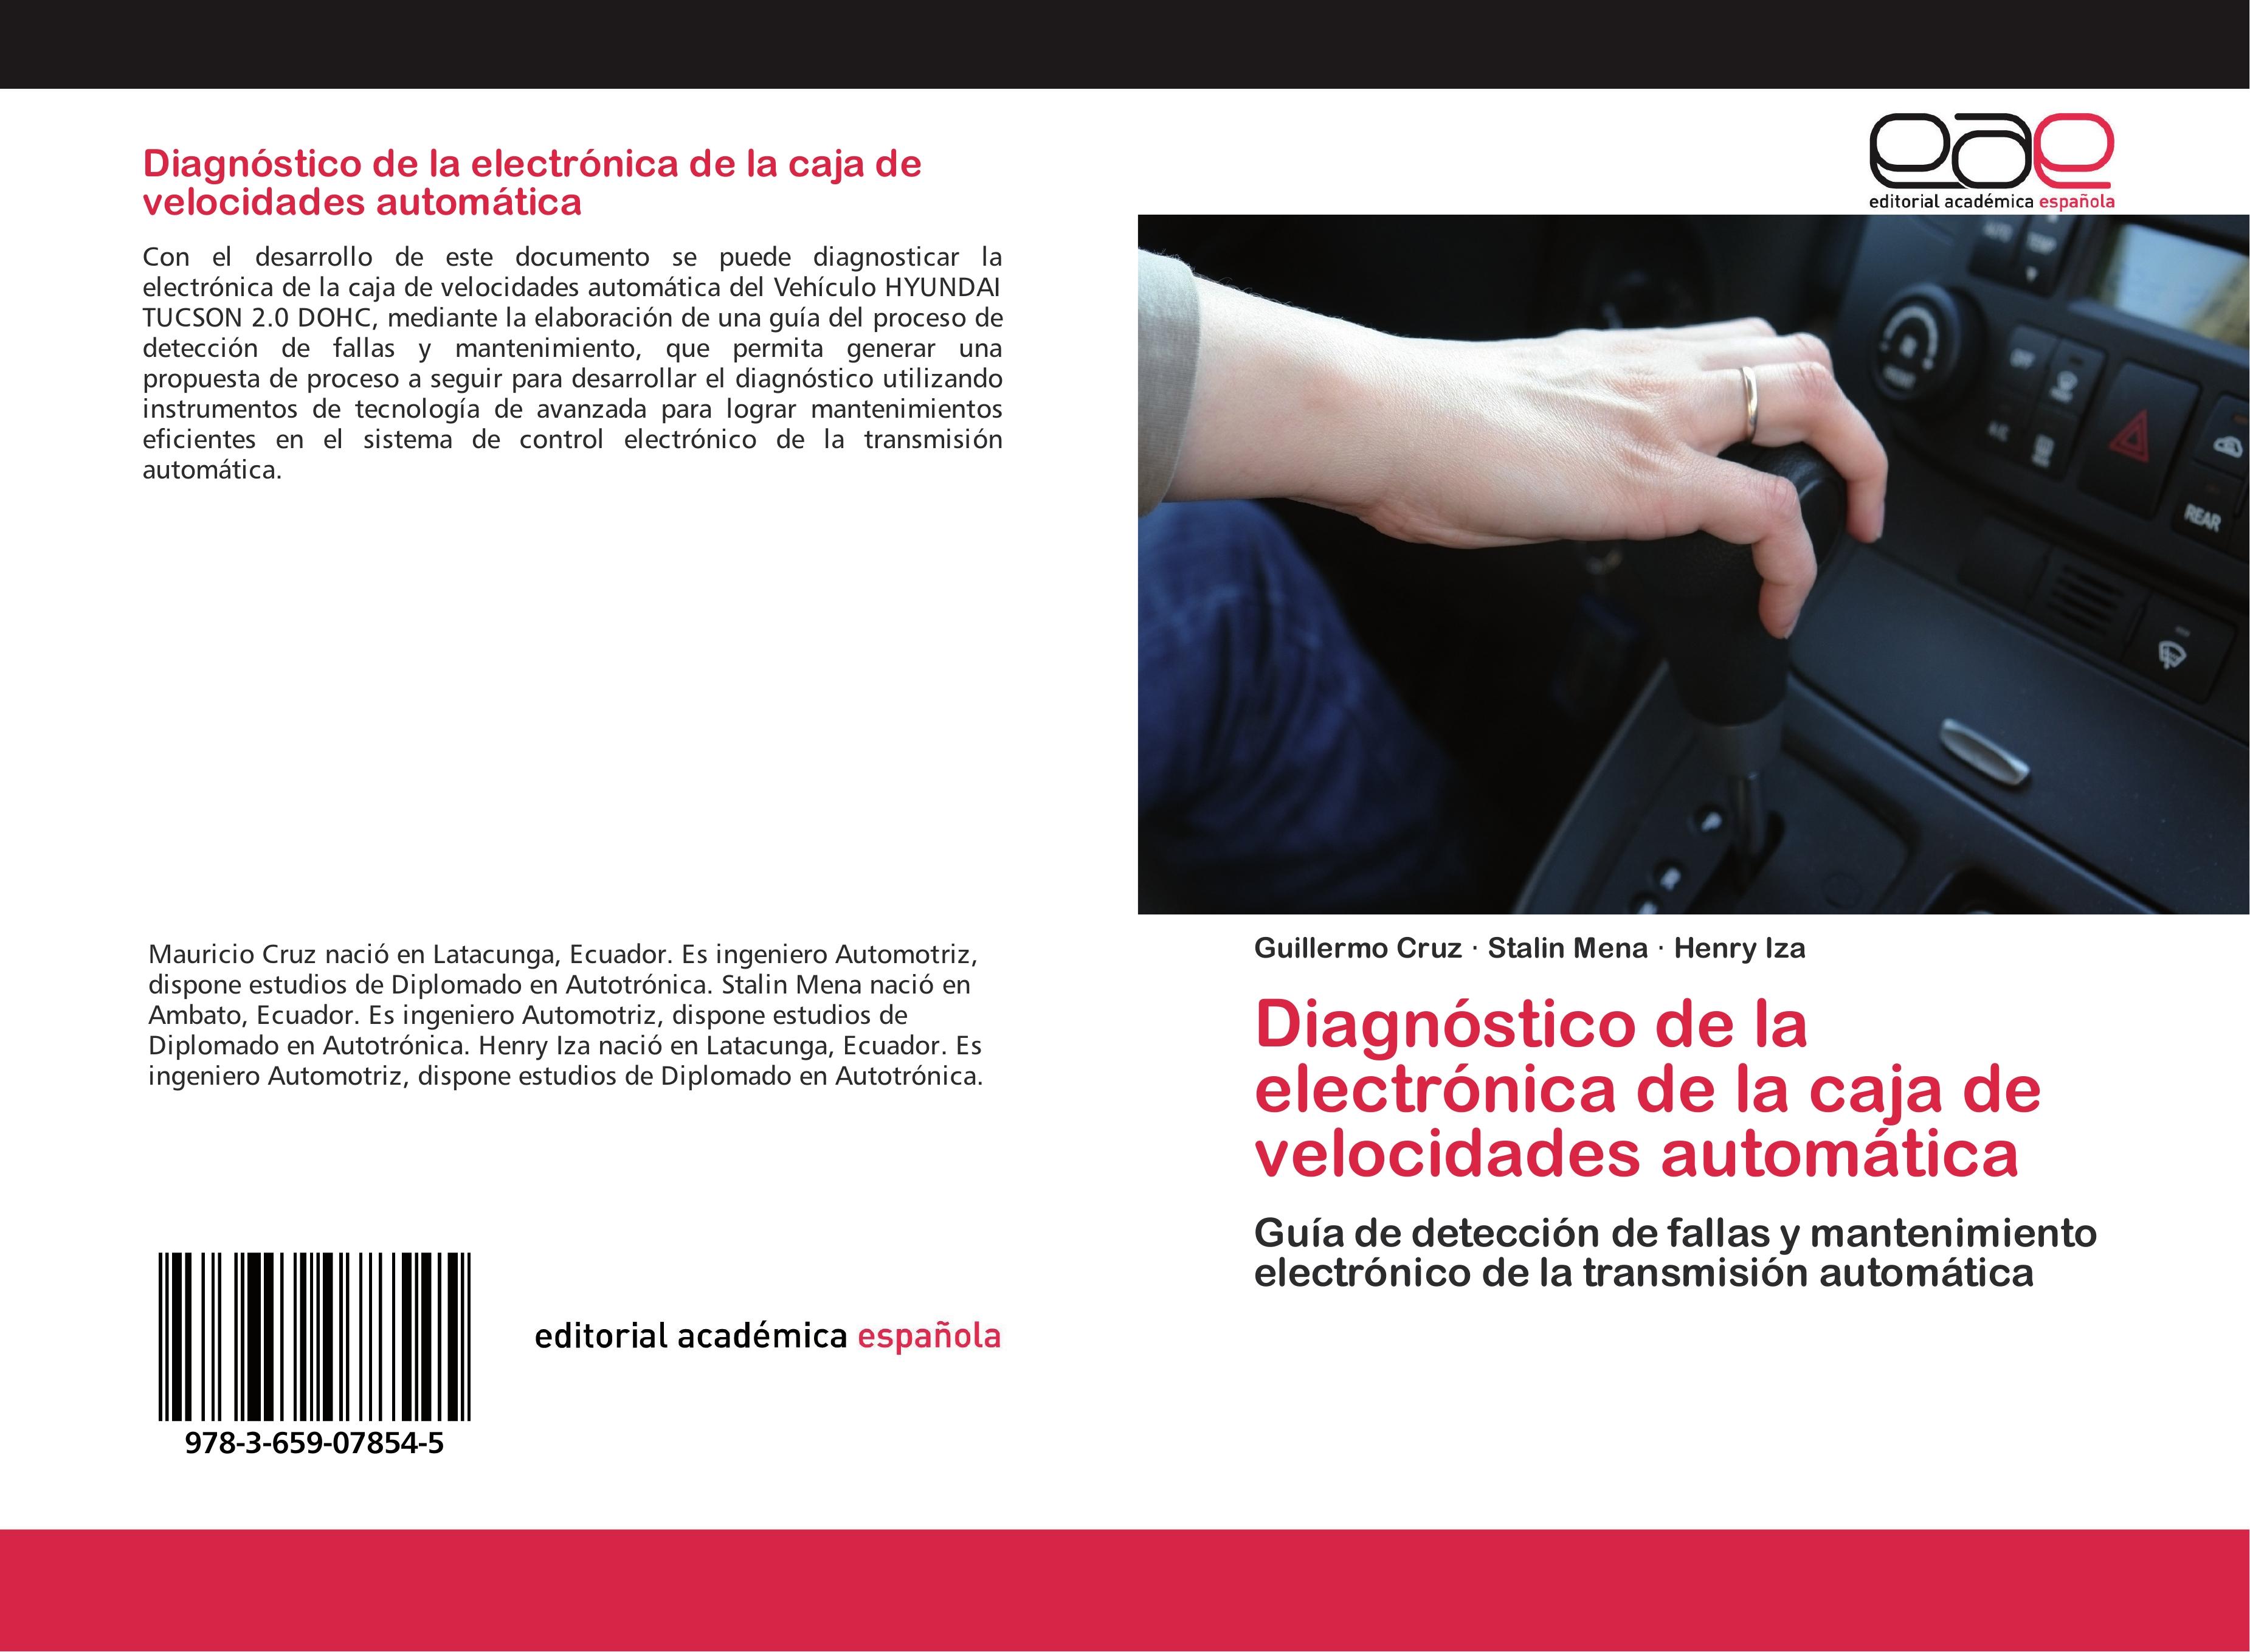 Diagnóstico de la electrónica de la caja de velocidades automática - Guillermo Cruz Stalin Mena Henry Iza